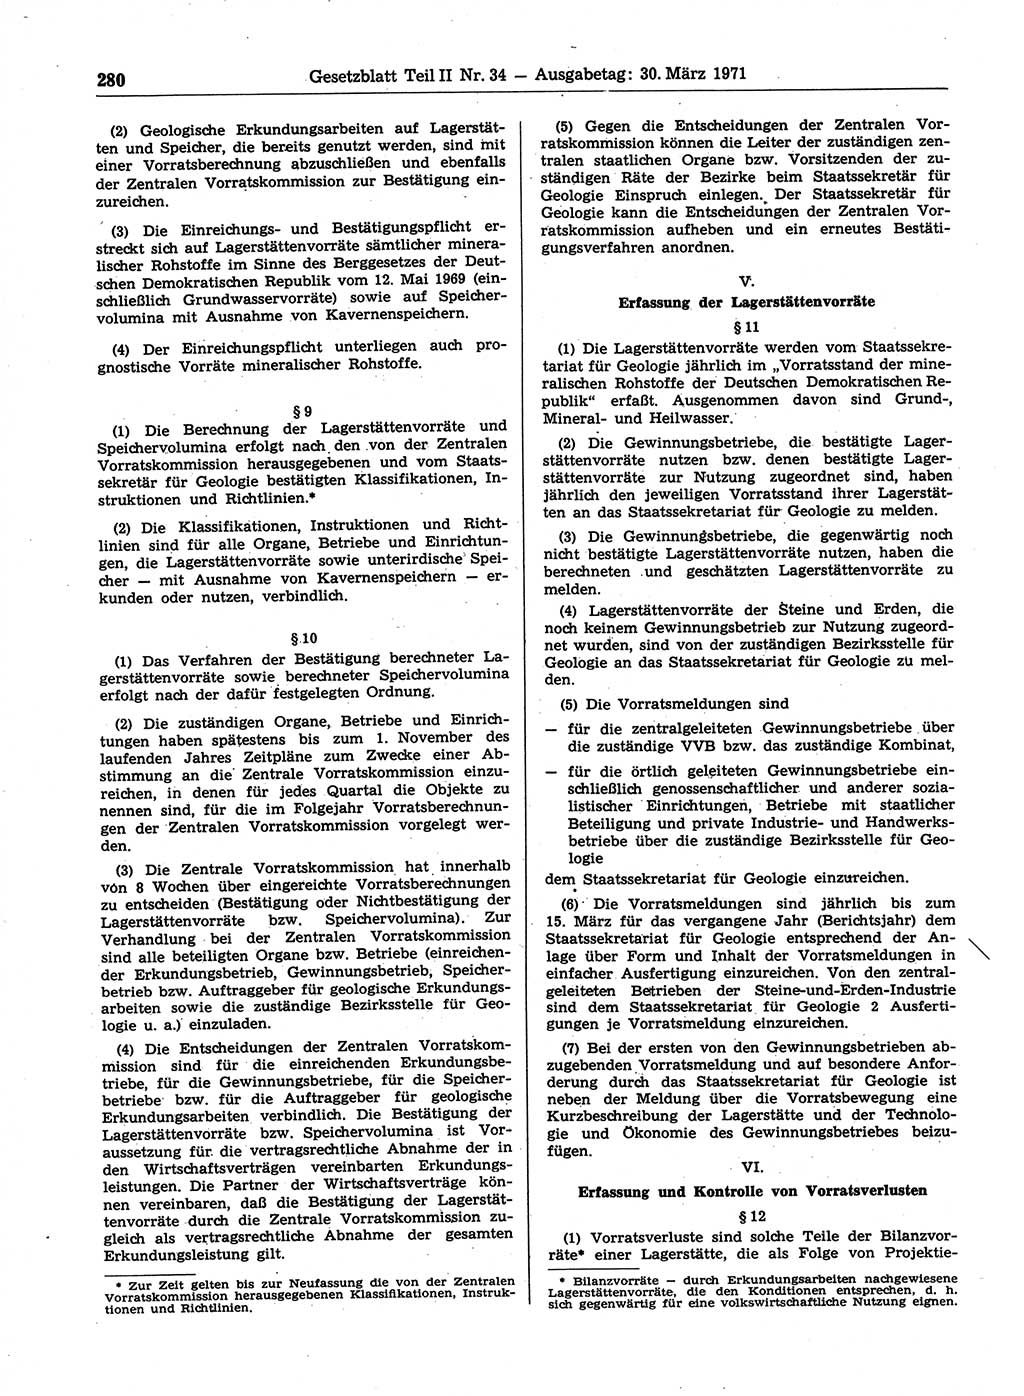 Gesetzblatt (GBl.) der Deutschen Demokratischen Republik (DDR) Teil ⅠⅠ 1971, Seite 280 (GBl. DDR ⅠⅠ 1971, S. 280)